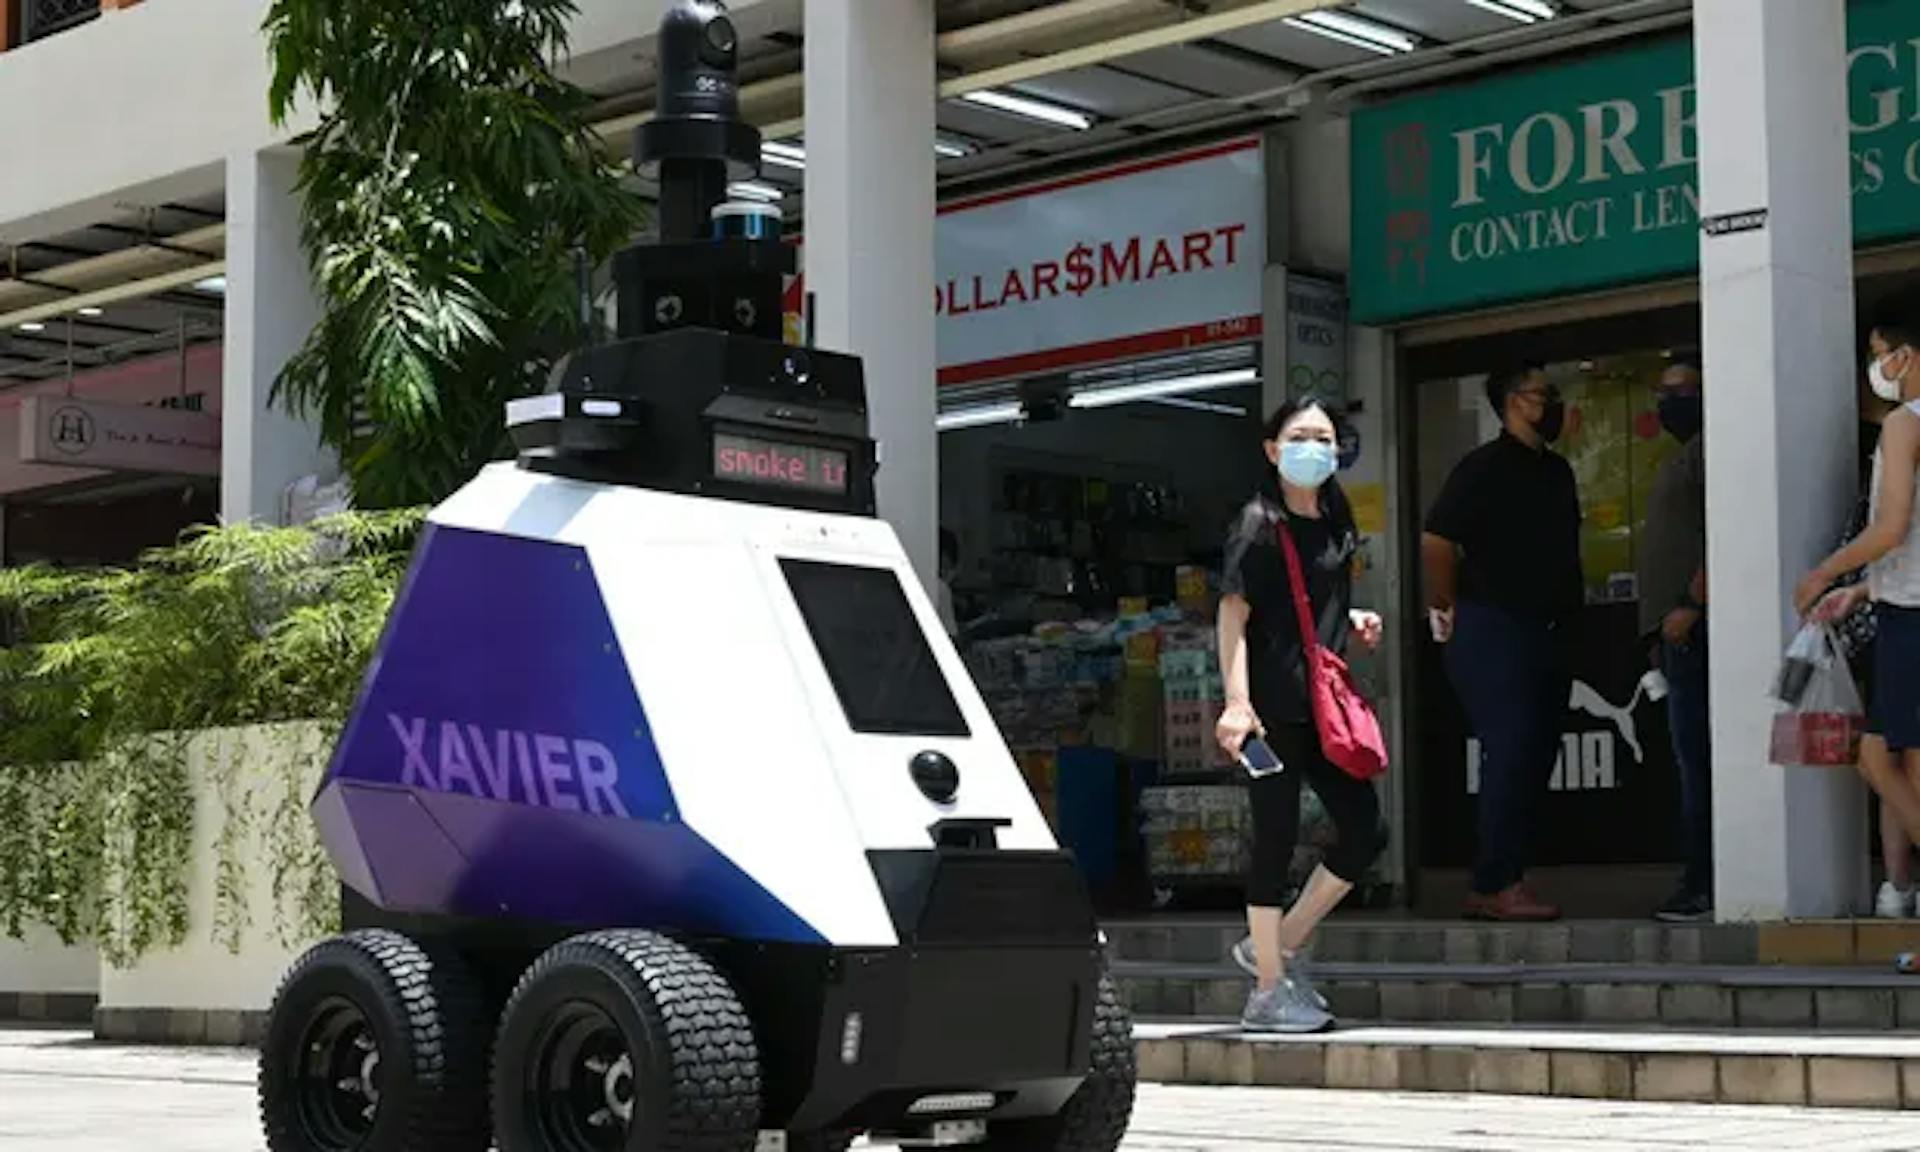 由 Home Team Science and Technology Agency (HTX) 开发的自主“Xavier”在新加坡进行了为期 3 周的试运行。 // 守护者